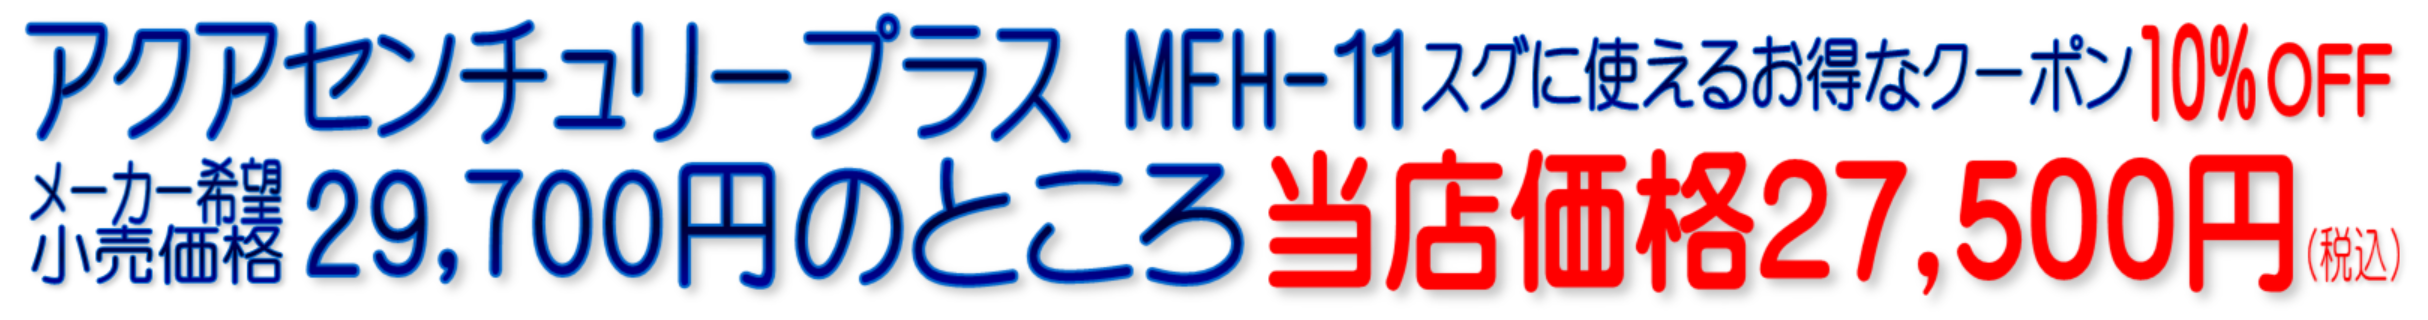 MFH-11